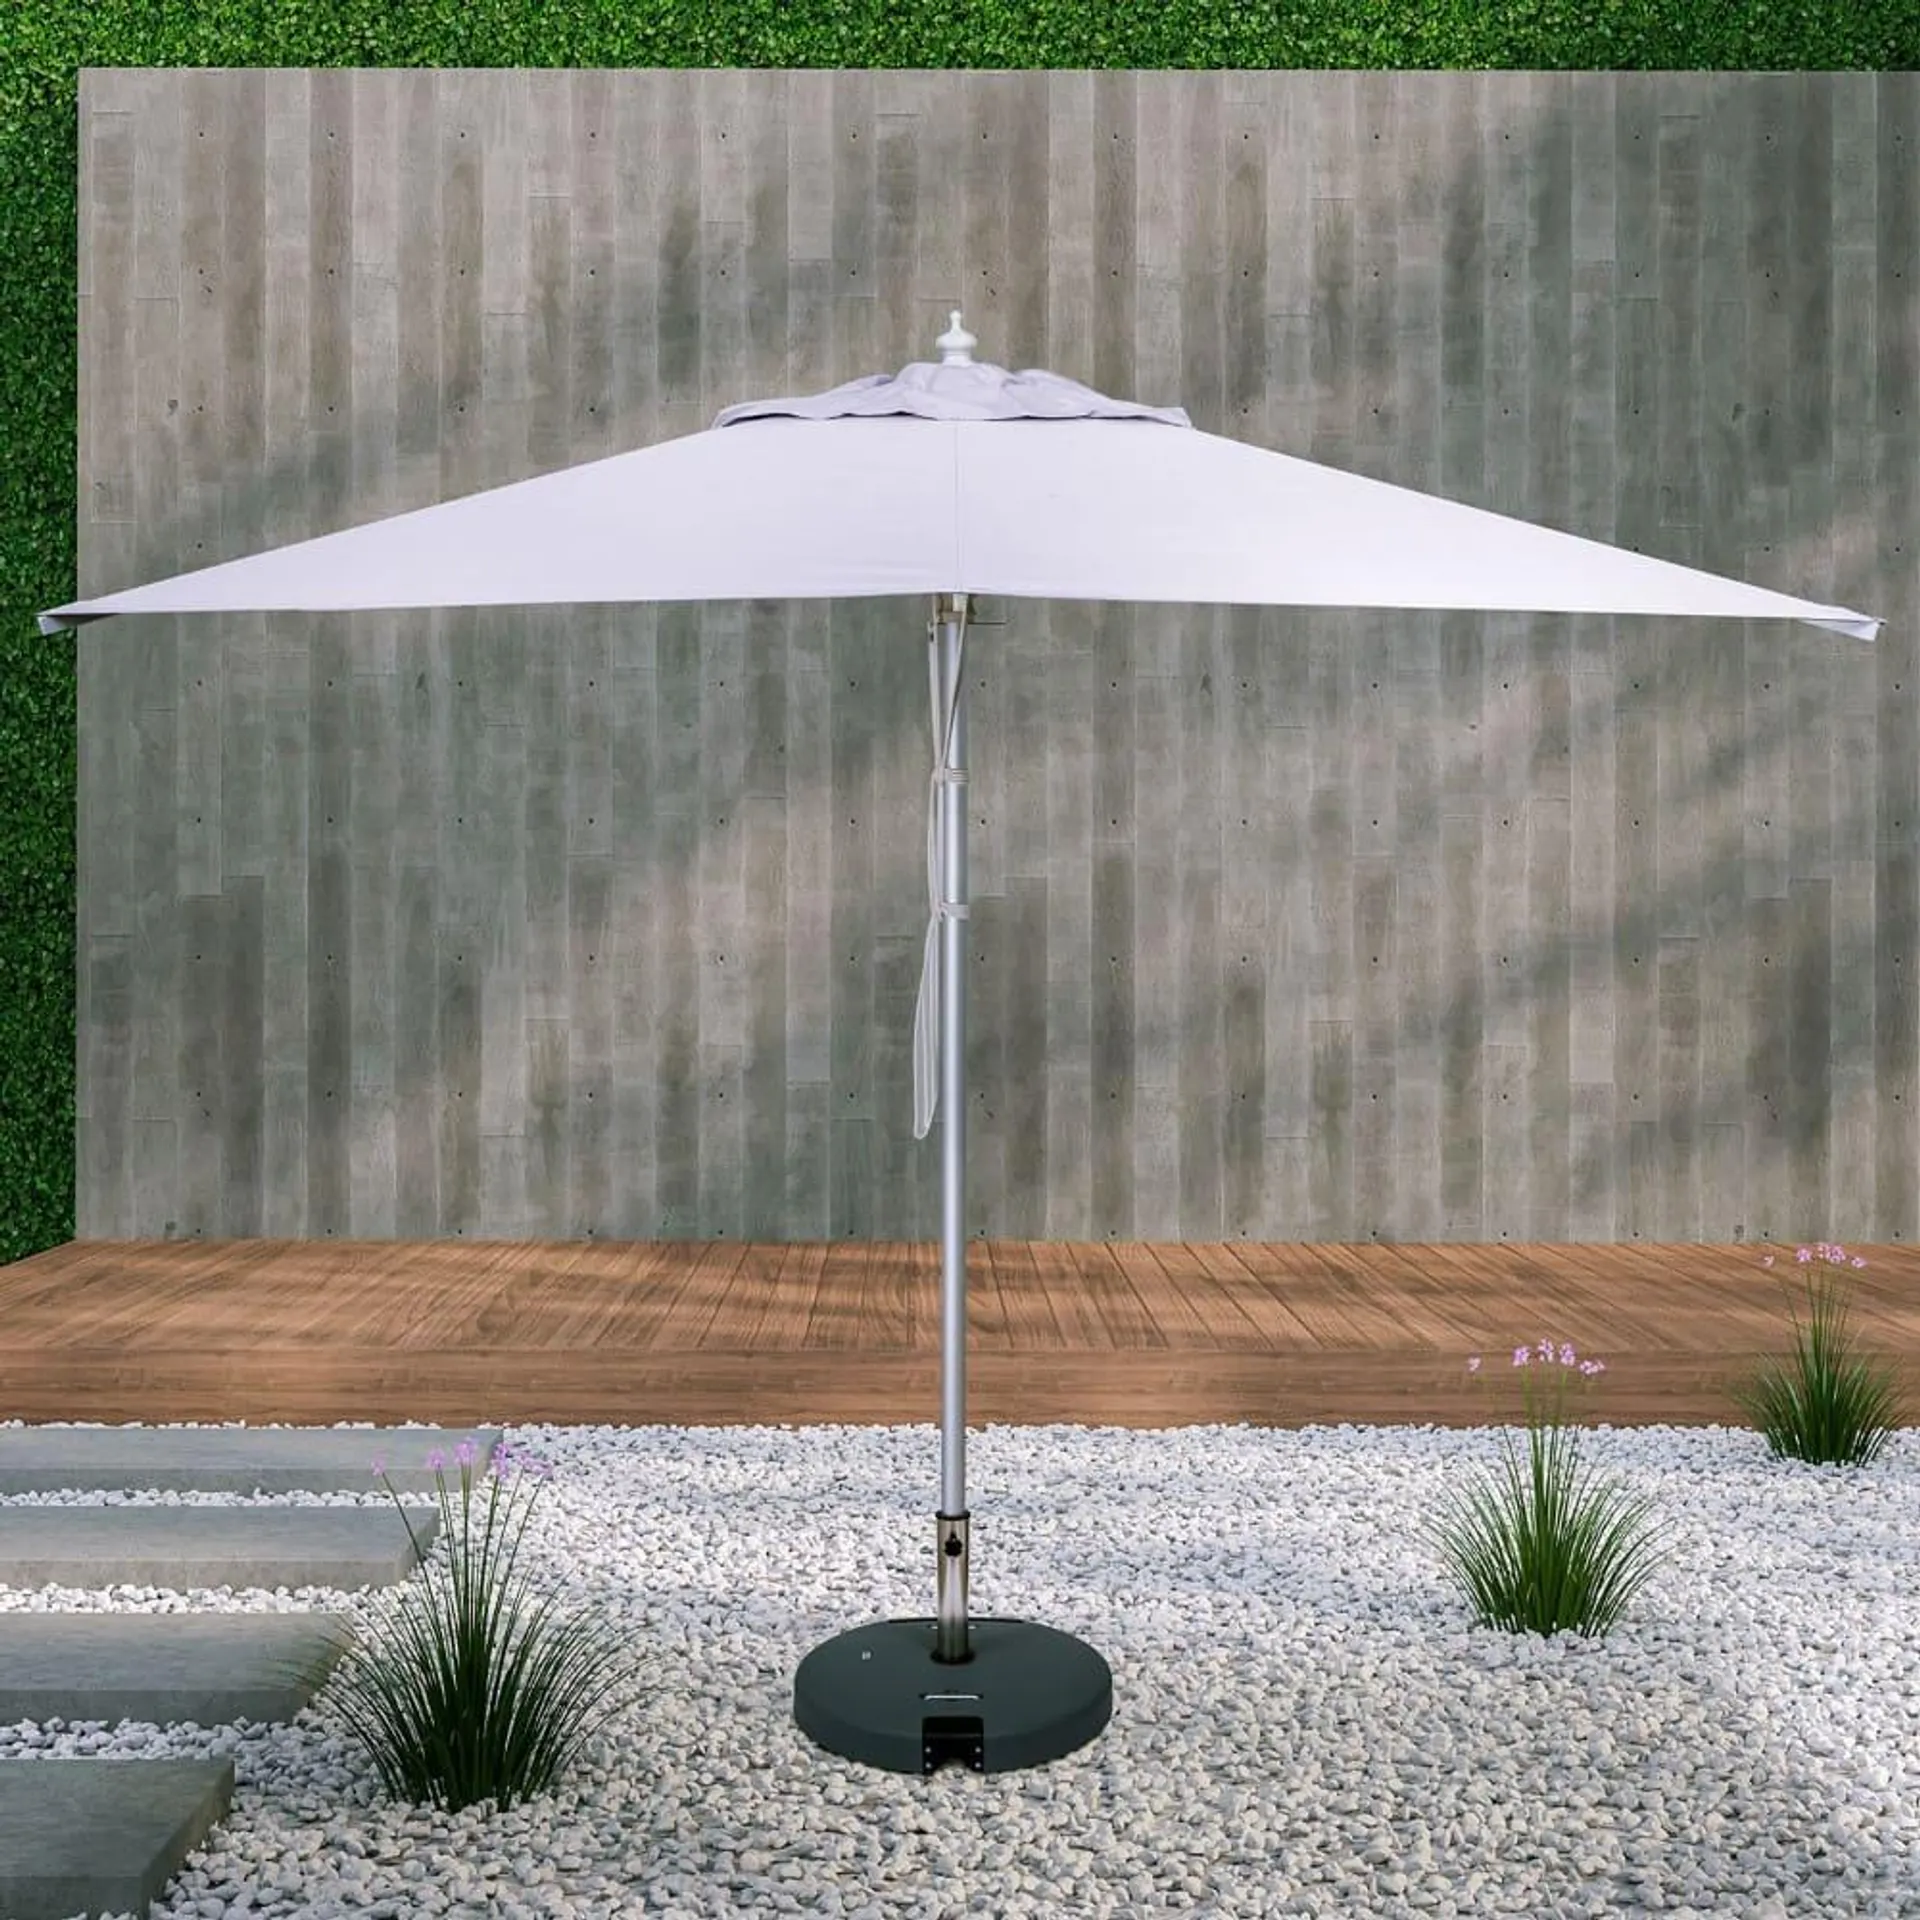 3mx3m Square Aluminium Centre Pole Umbrella